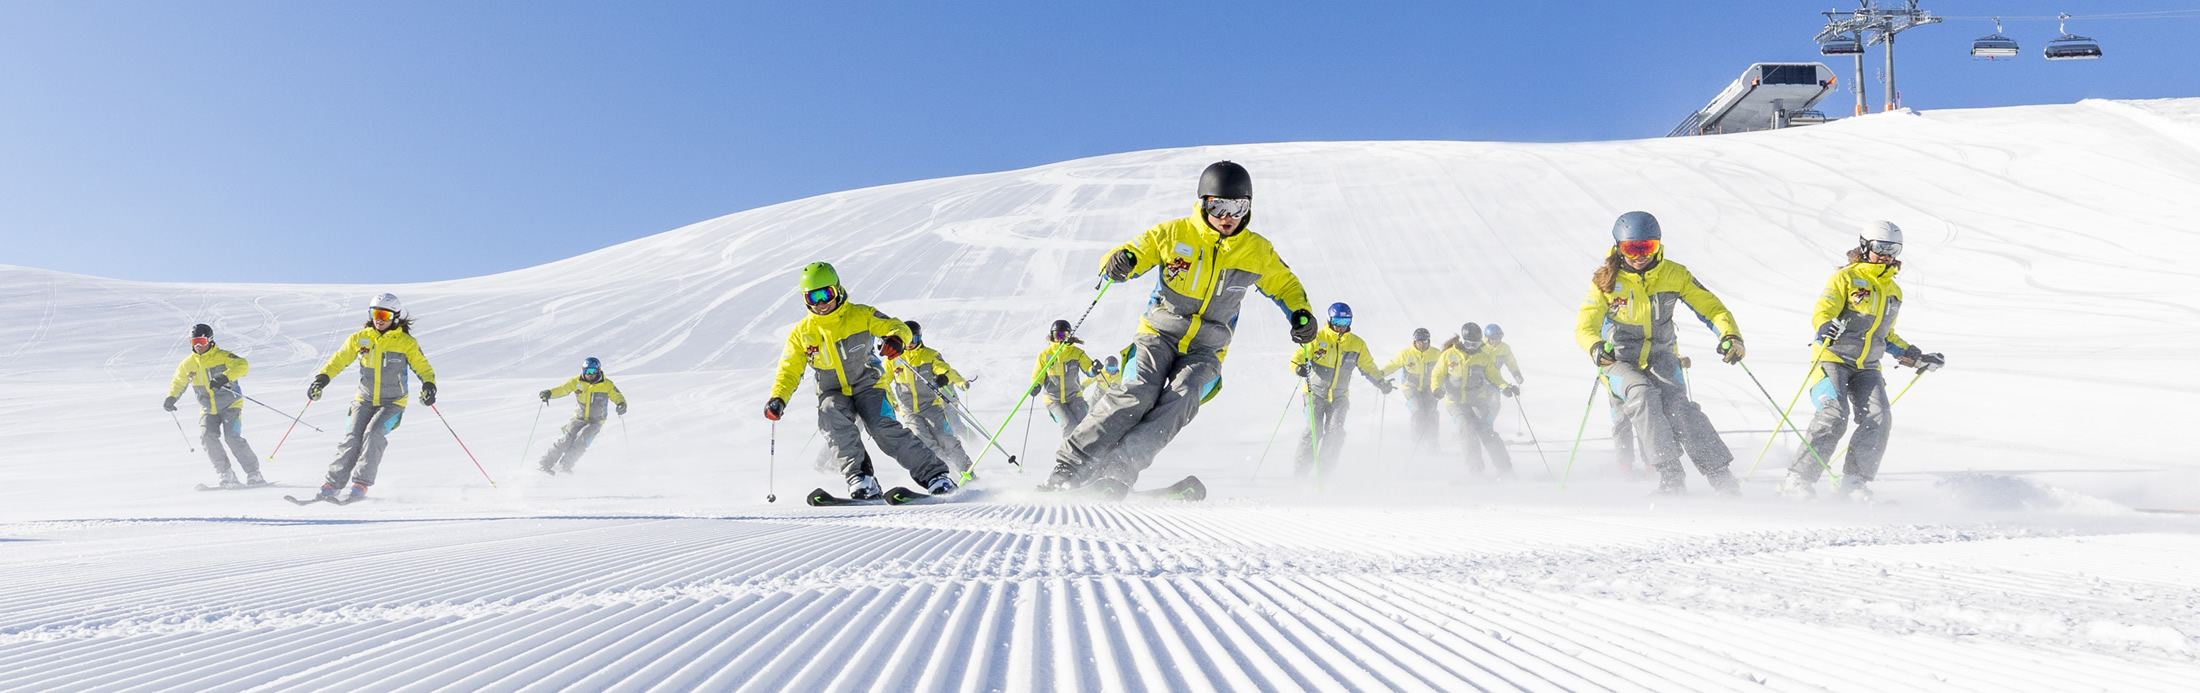 Skikurs für Erwachsene in Flachau bei der Skischule Sport am Jet